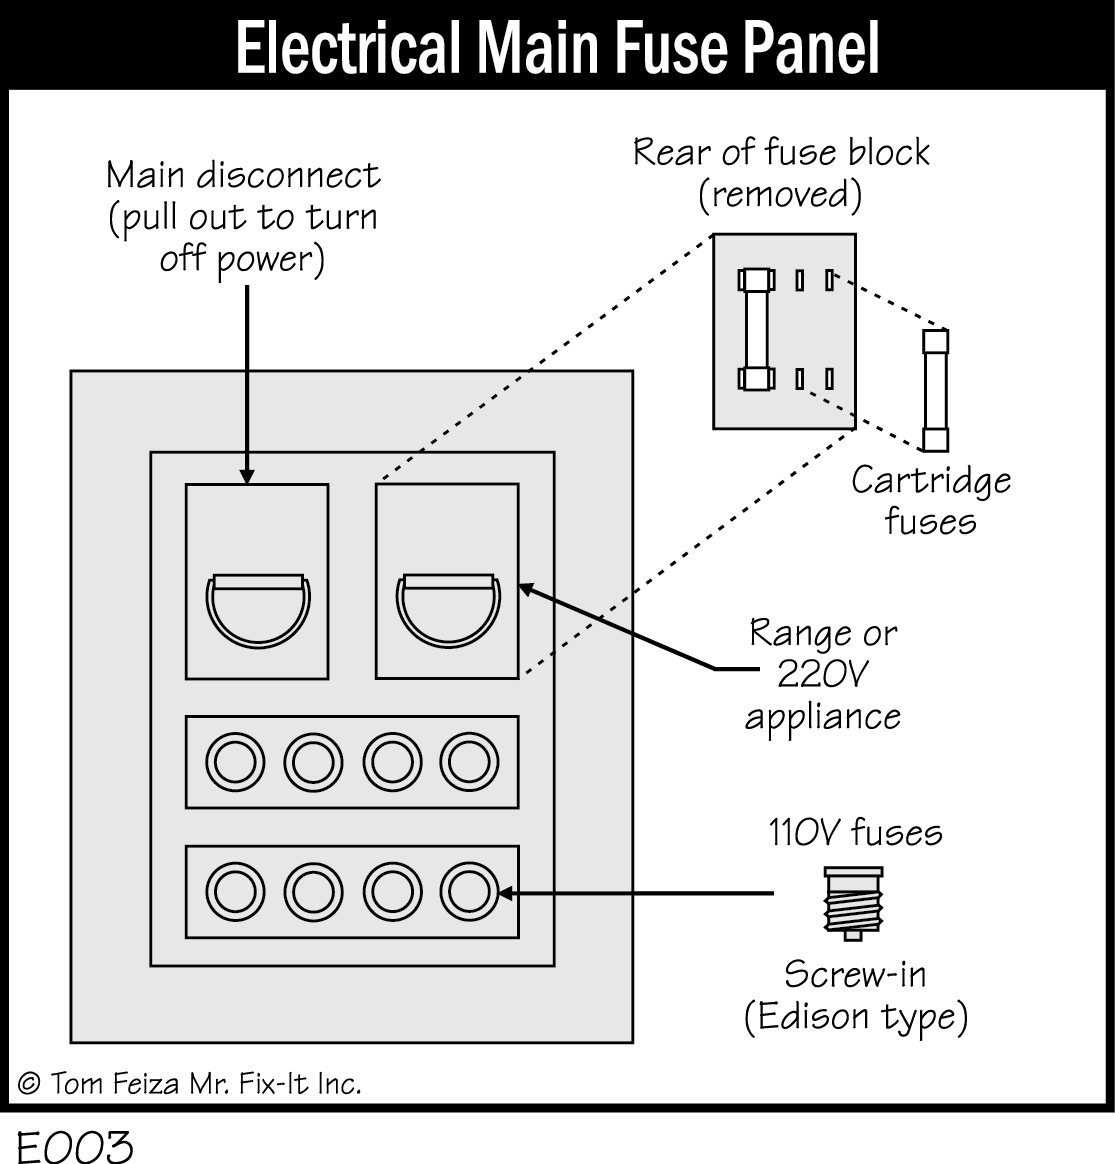 E003 - Electrical Main Fuse Panel